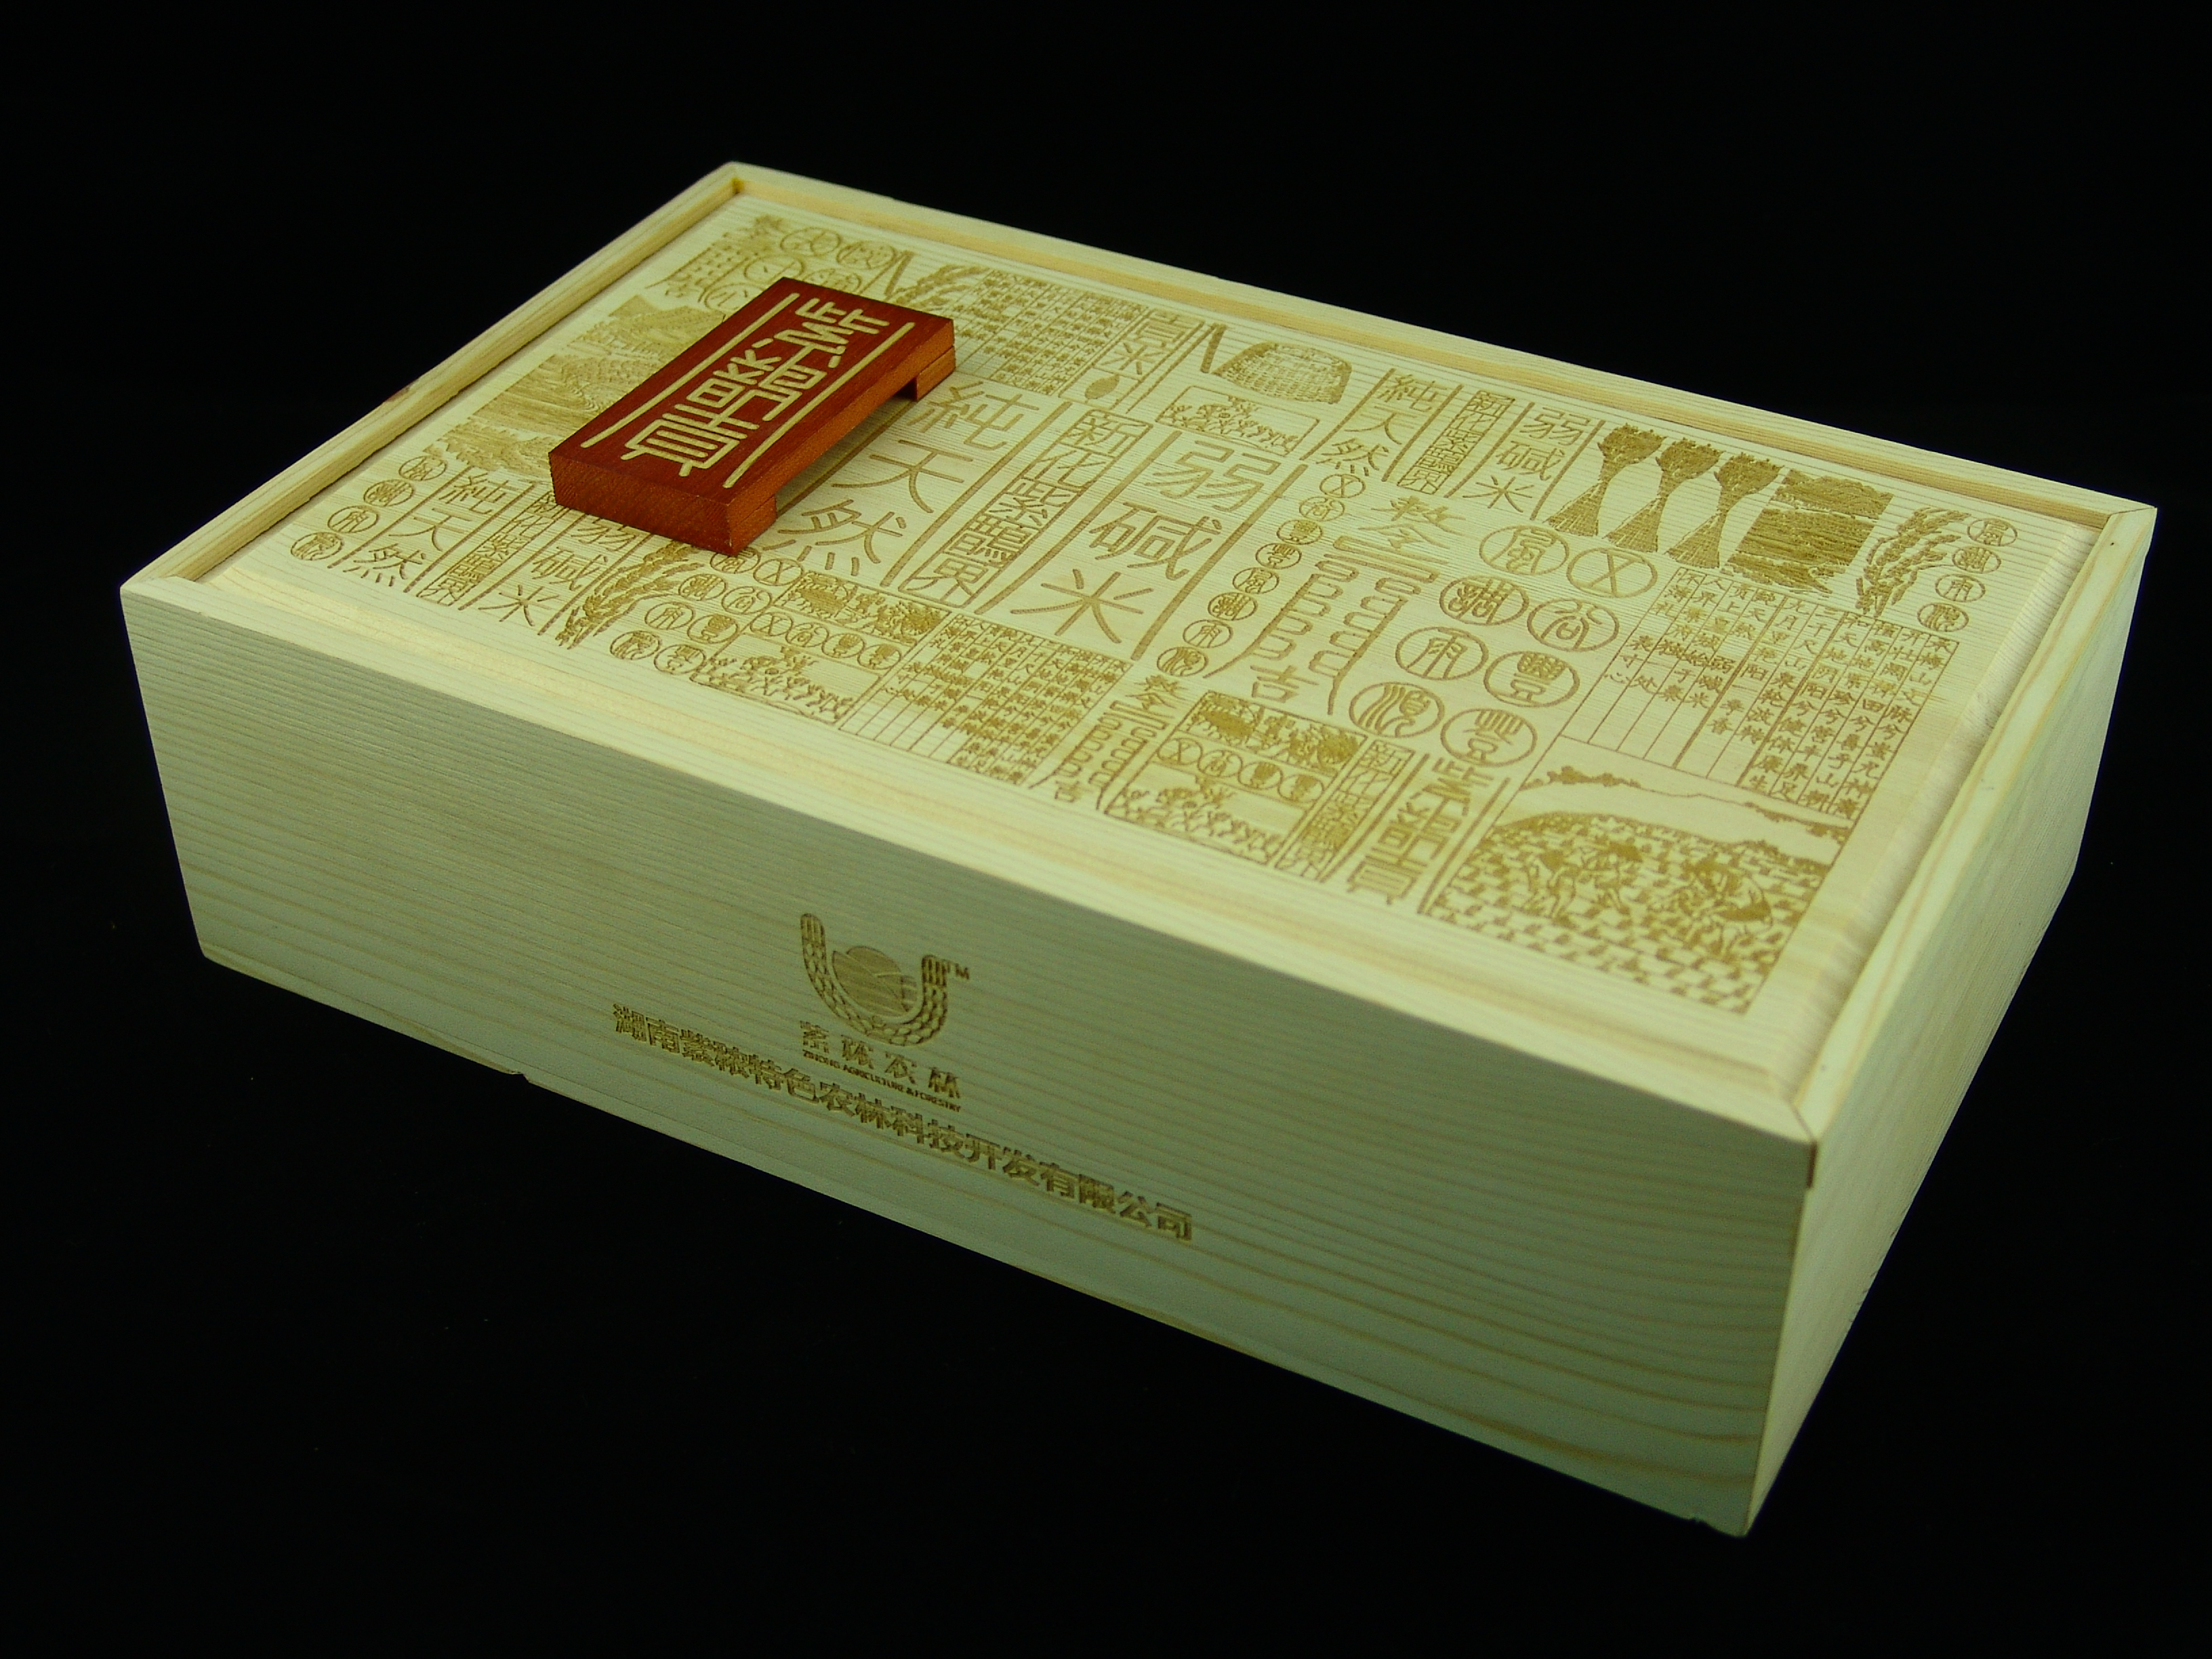 产品外包装的深圳红酒木盒设计公司